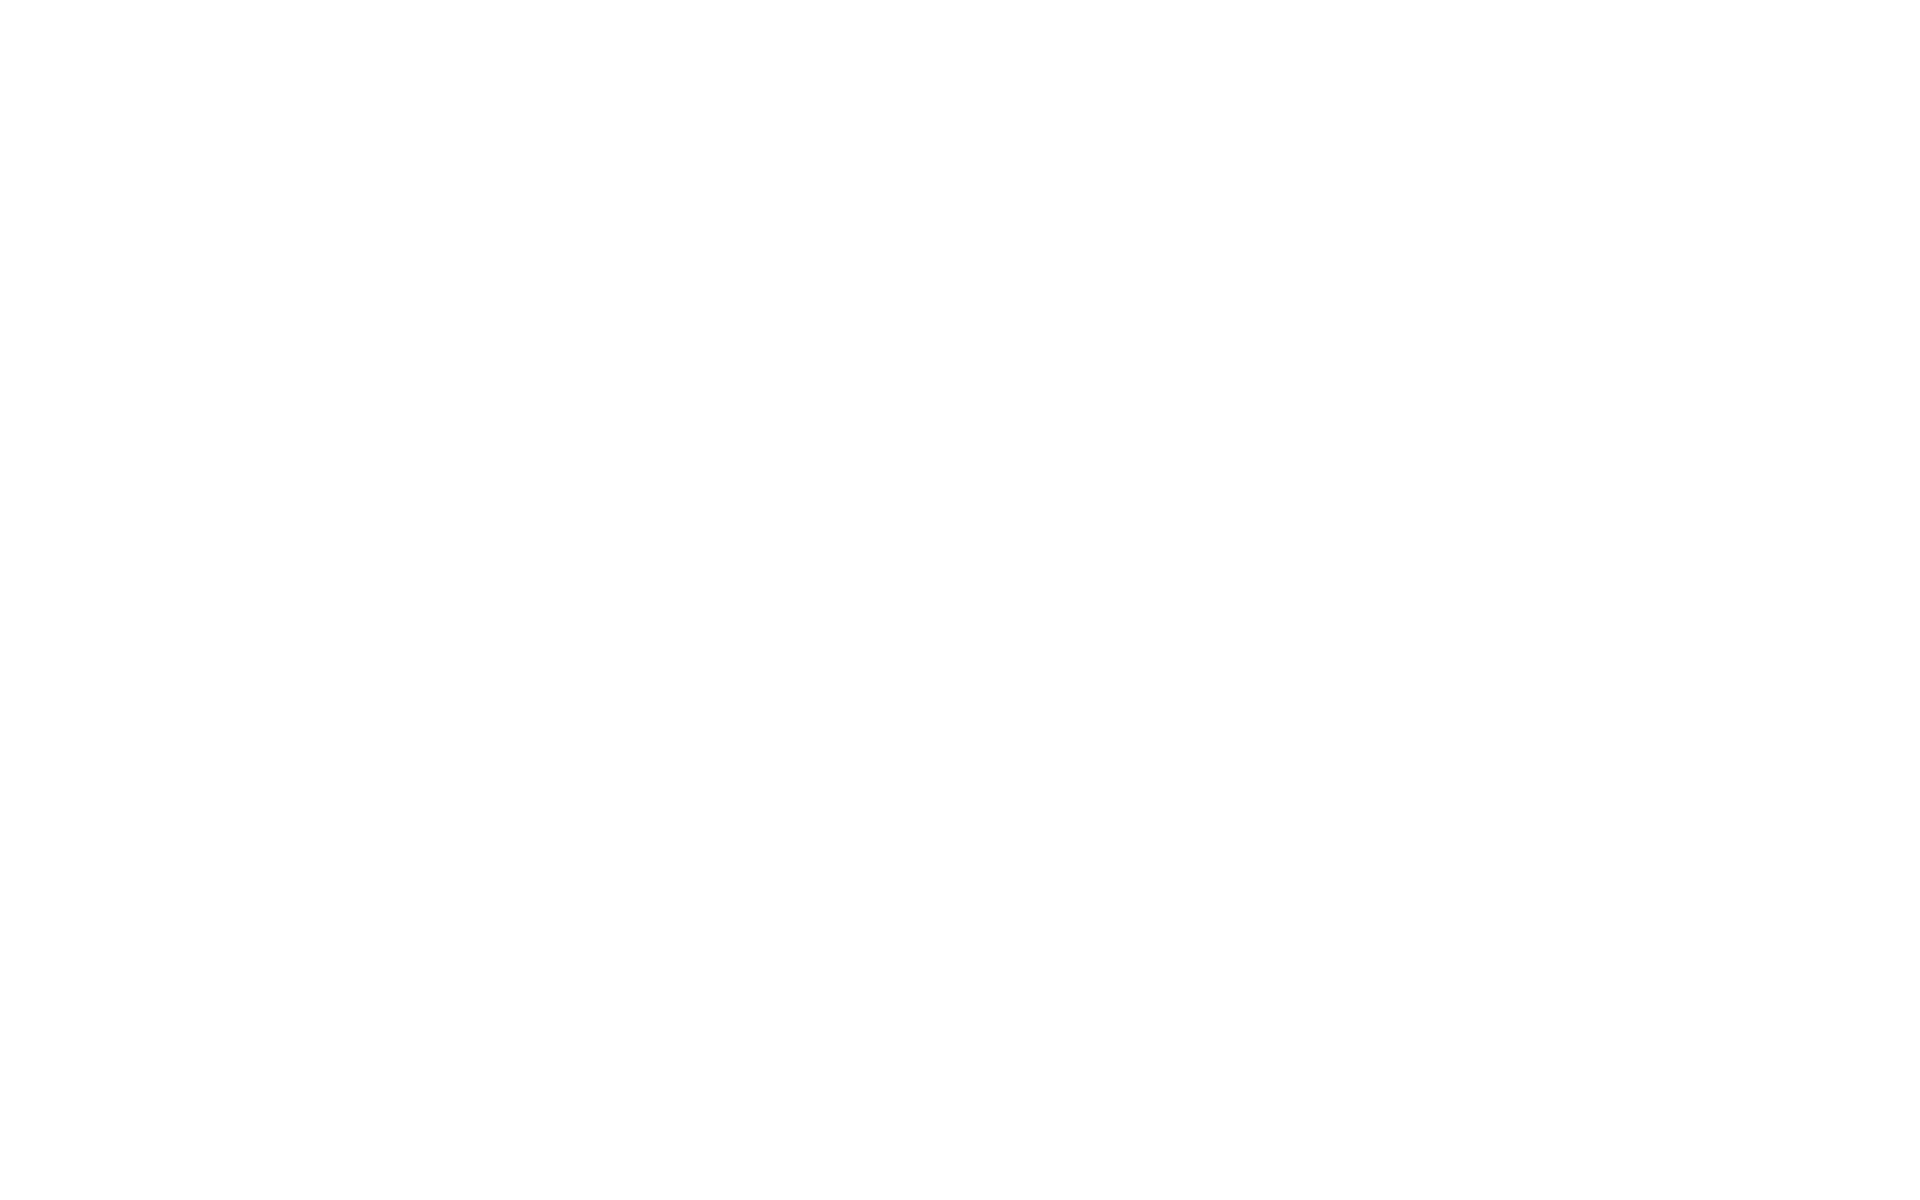 Кислород и уход за кожей лица - кислородные коктейли - Москва, улица Грина 18, (район Северное Бутово) - телефон +7(925)223-76-73